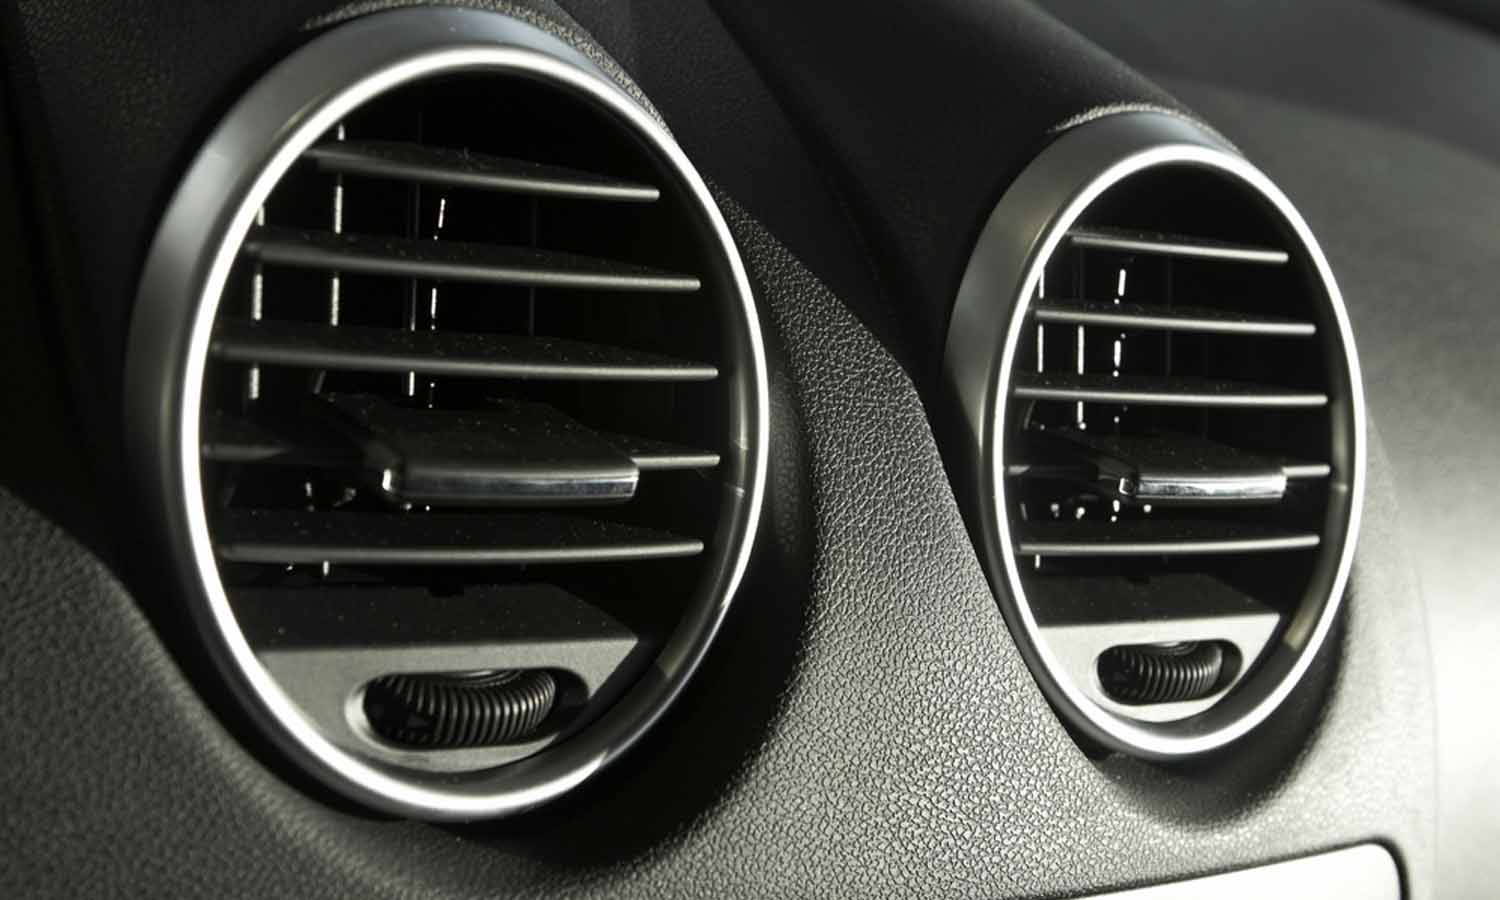 Masalah Yang Paling Sering Terjadi Pada AC Mobil